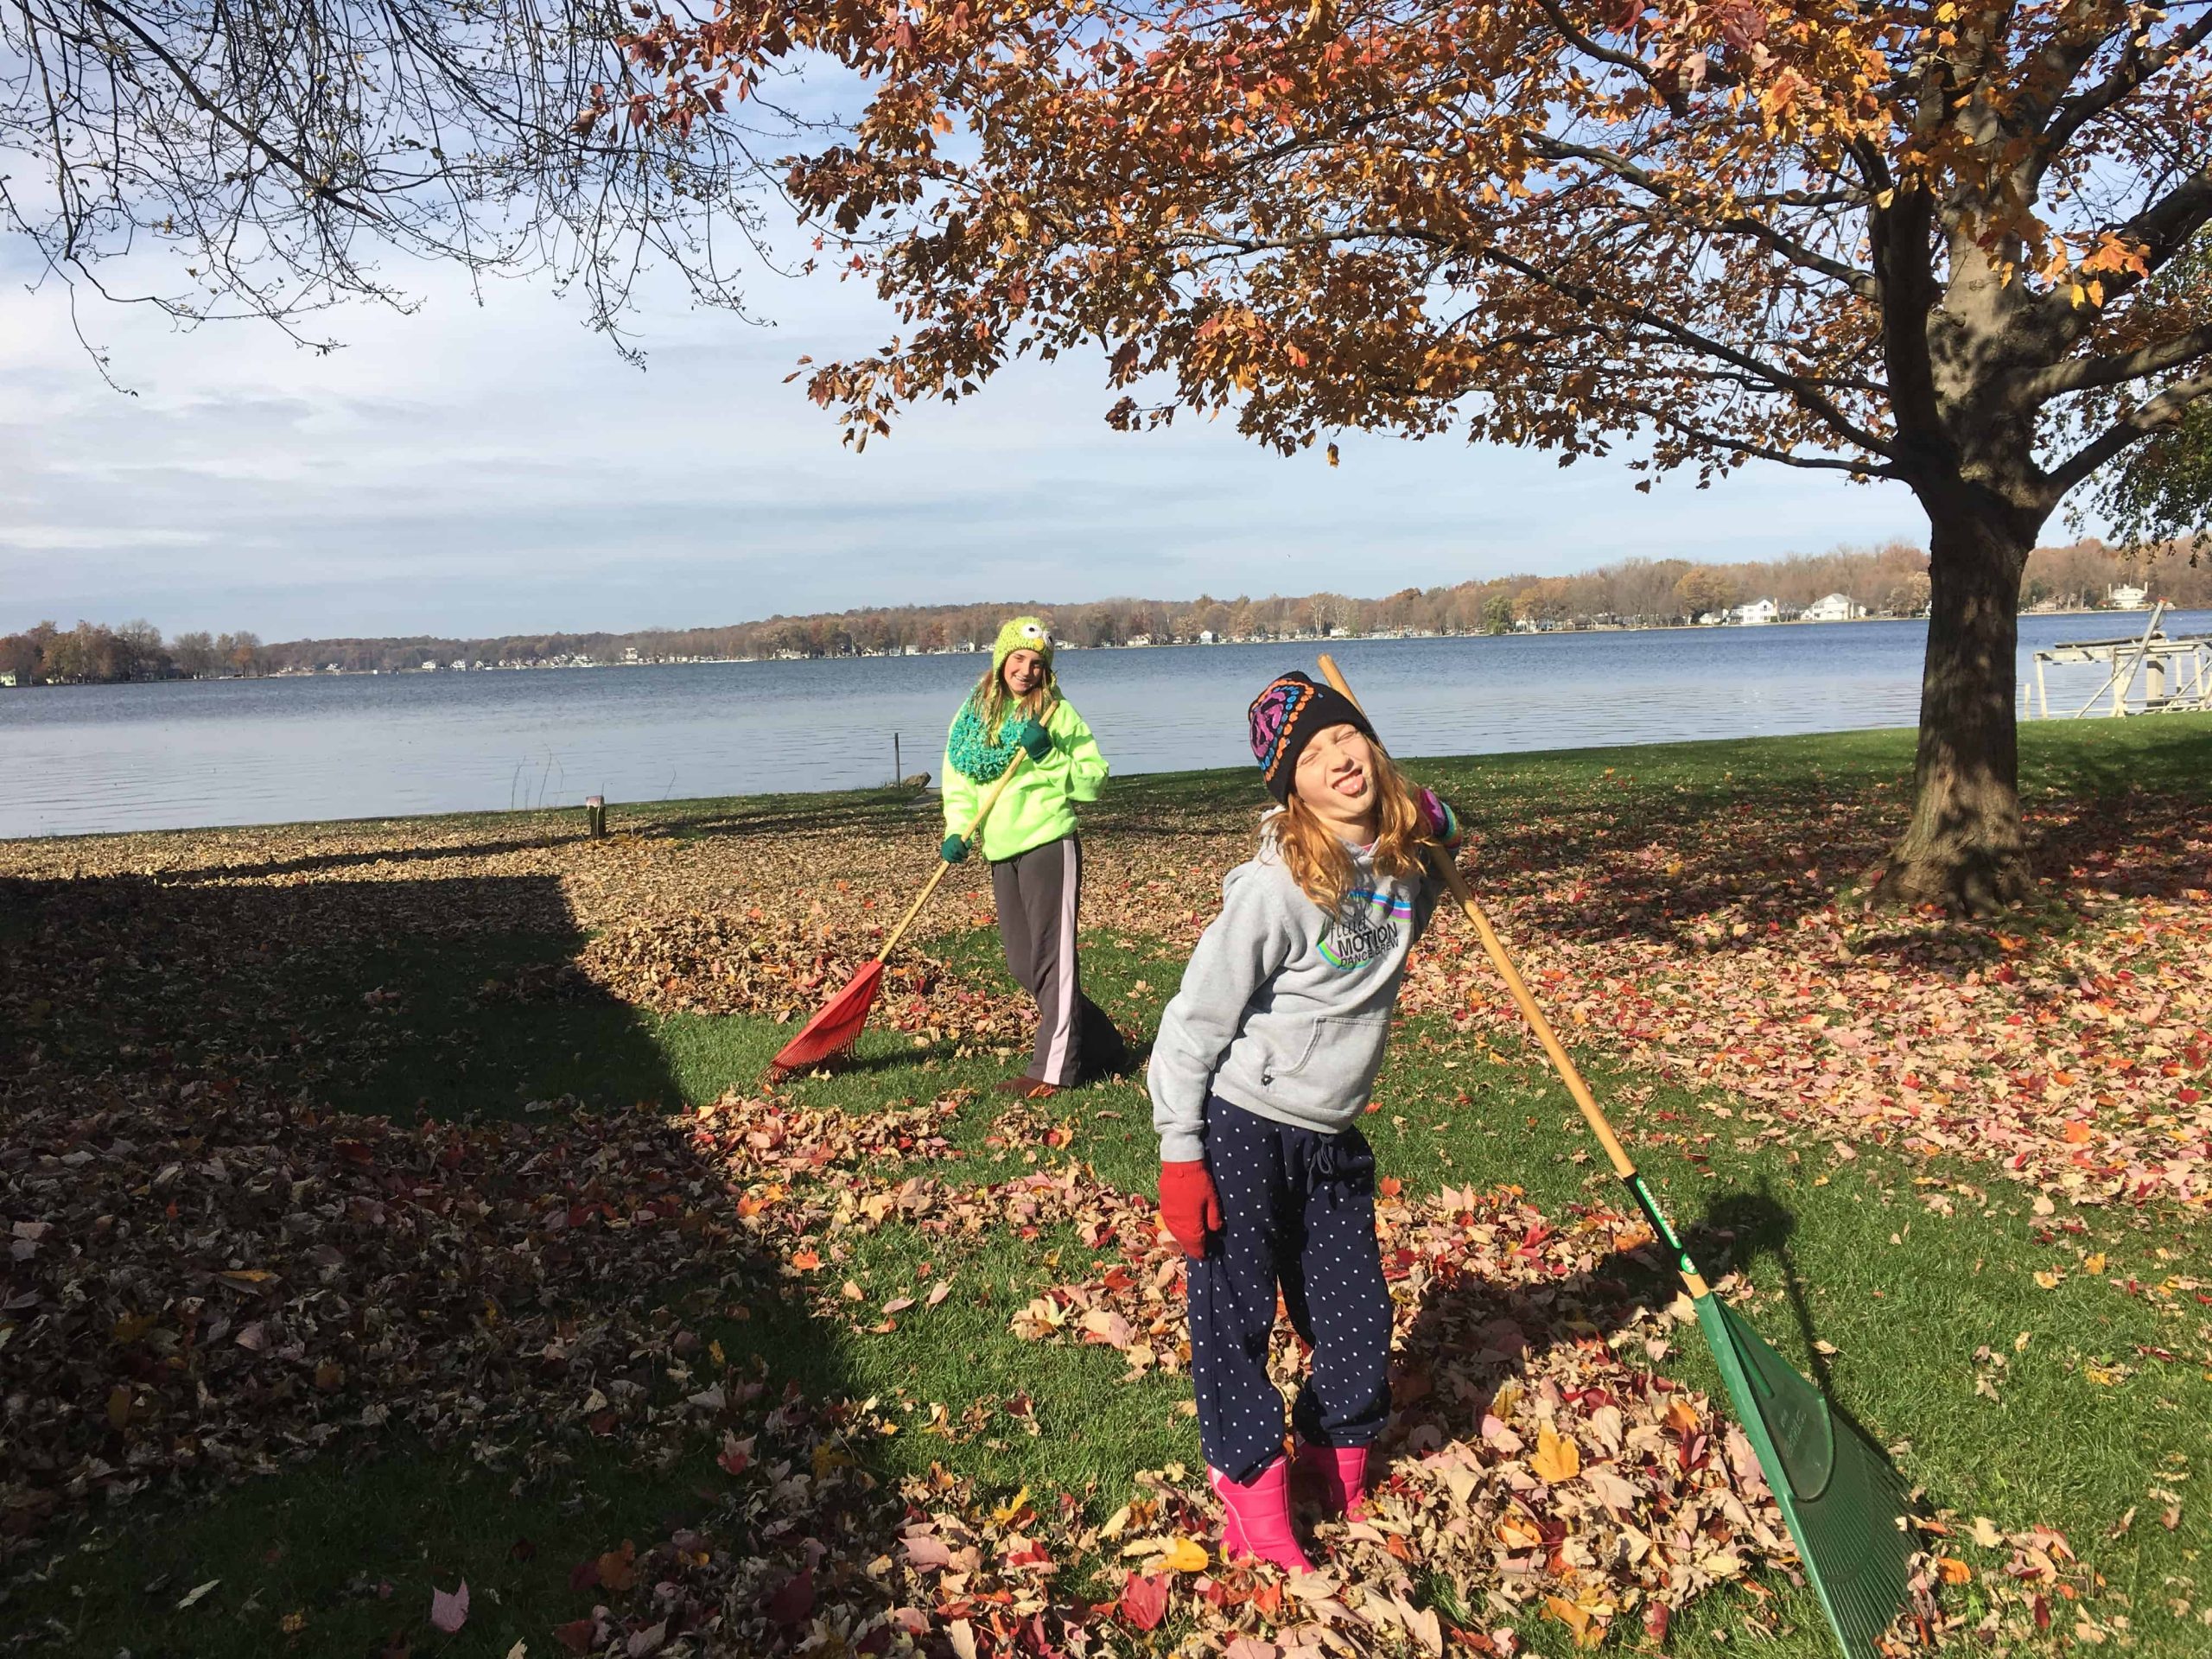 Kids raking leaves